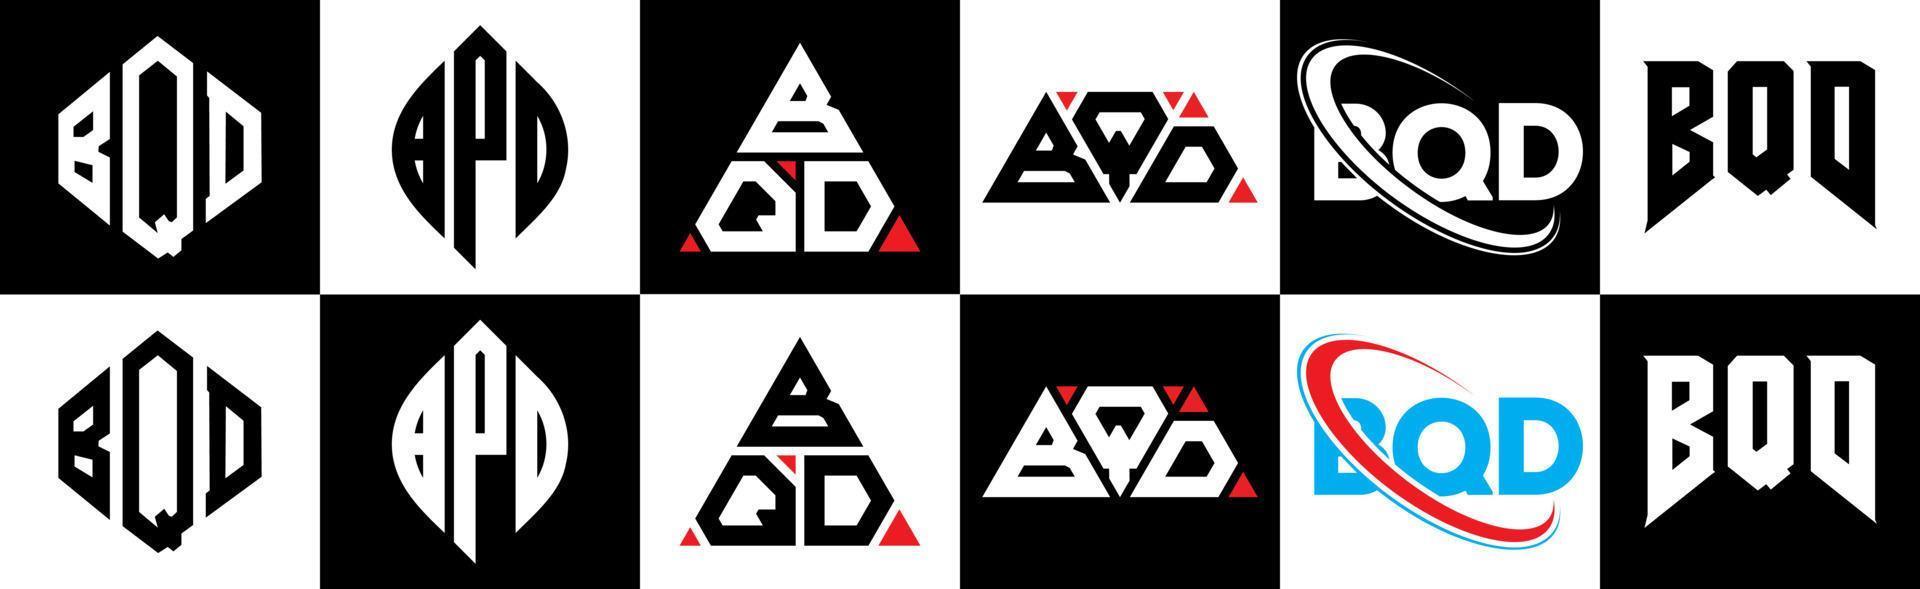 création de logo de lettre bqd en six styles. polygone bqd, cercle, triangle, hexagone, style plat et simple avec logo de lettre de variation de couleur noir et blanc dans un plan de travail. bqd logo minimaliste et classique vecteur